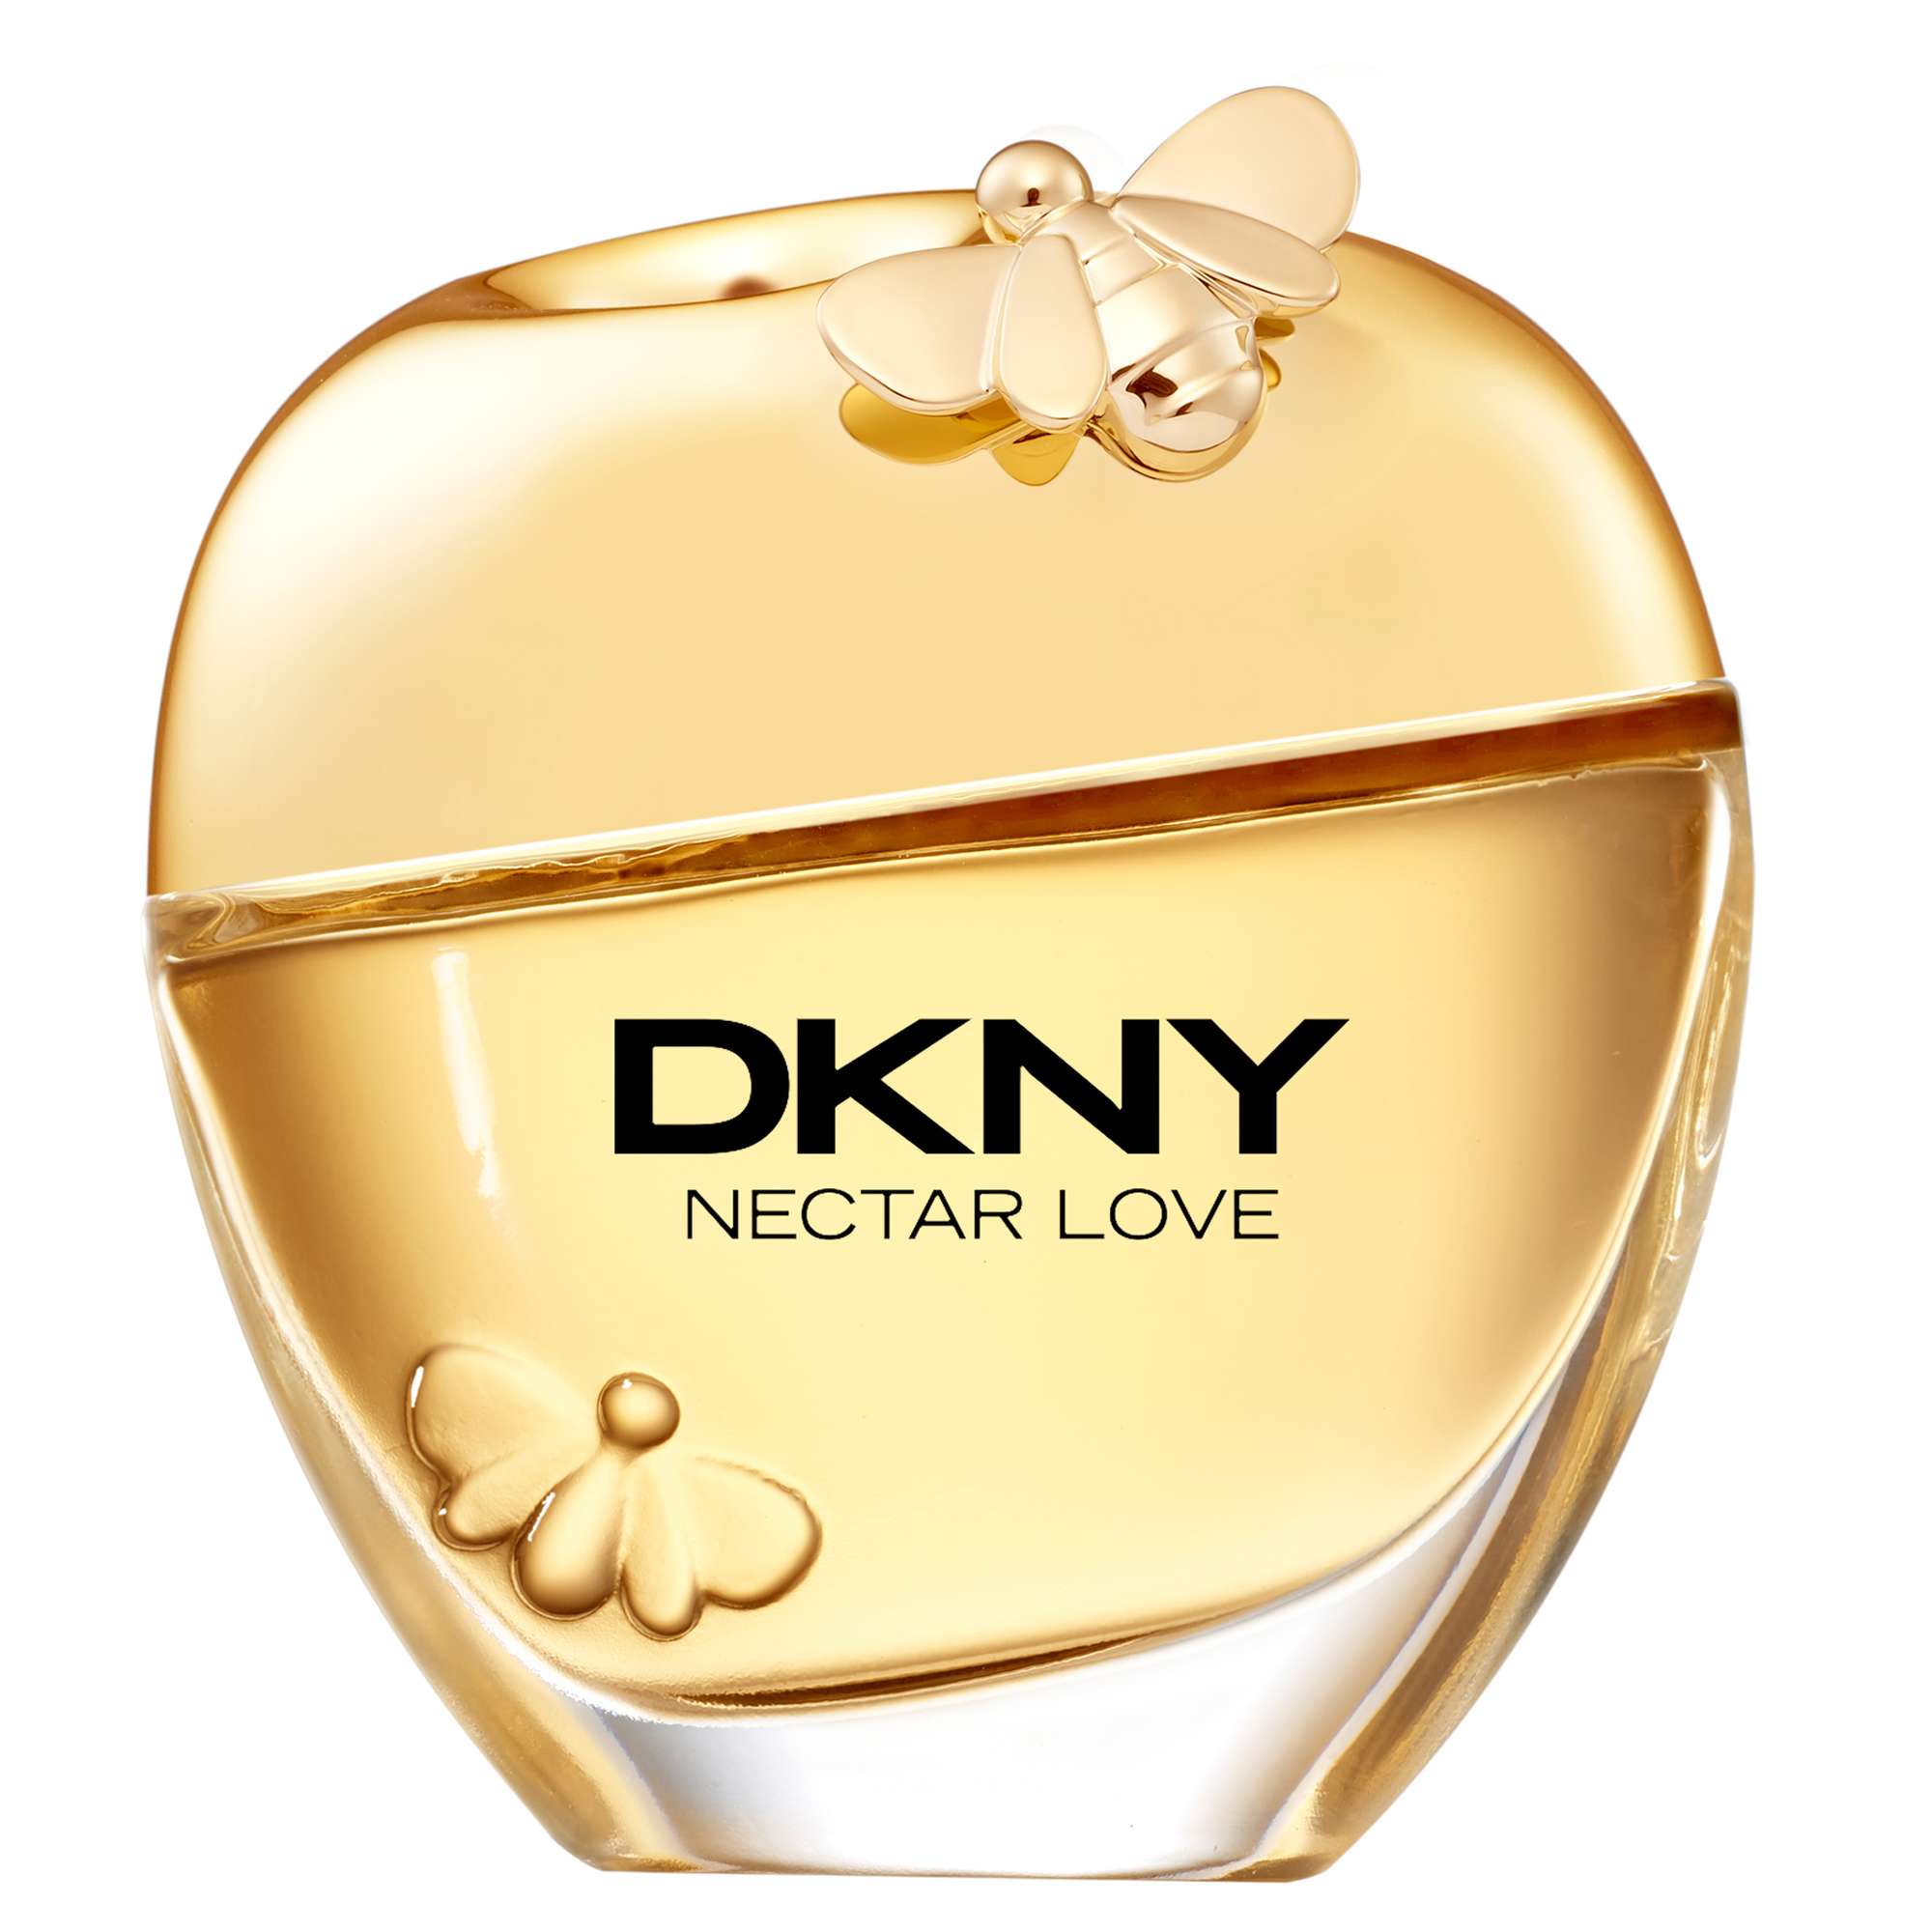 Photos - Women's Fragrance DKNY Nectar Love Eau de Parfum 100ml 